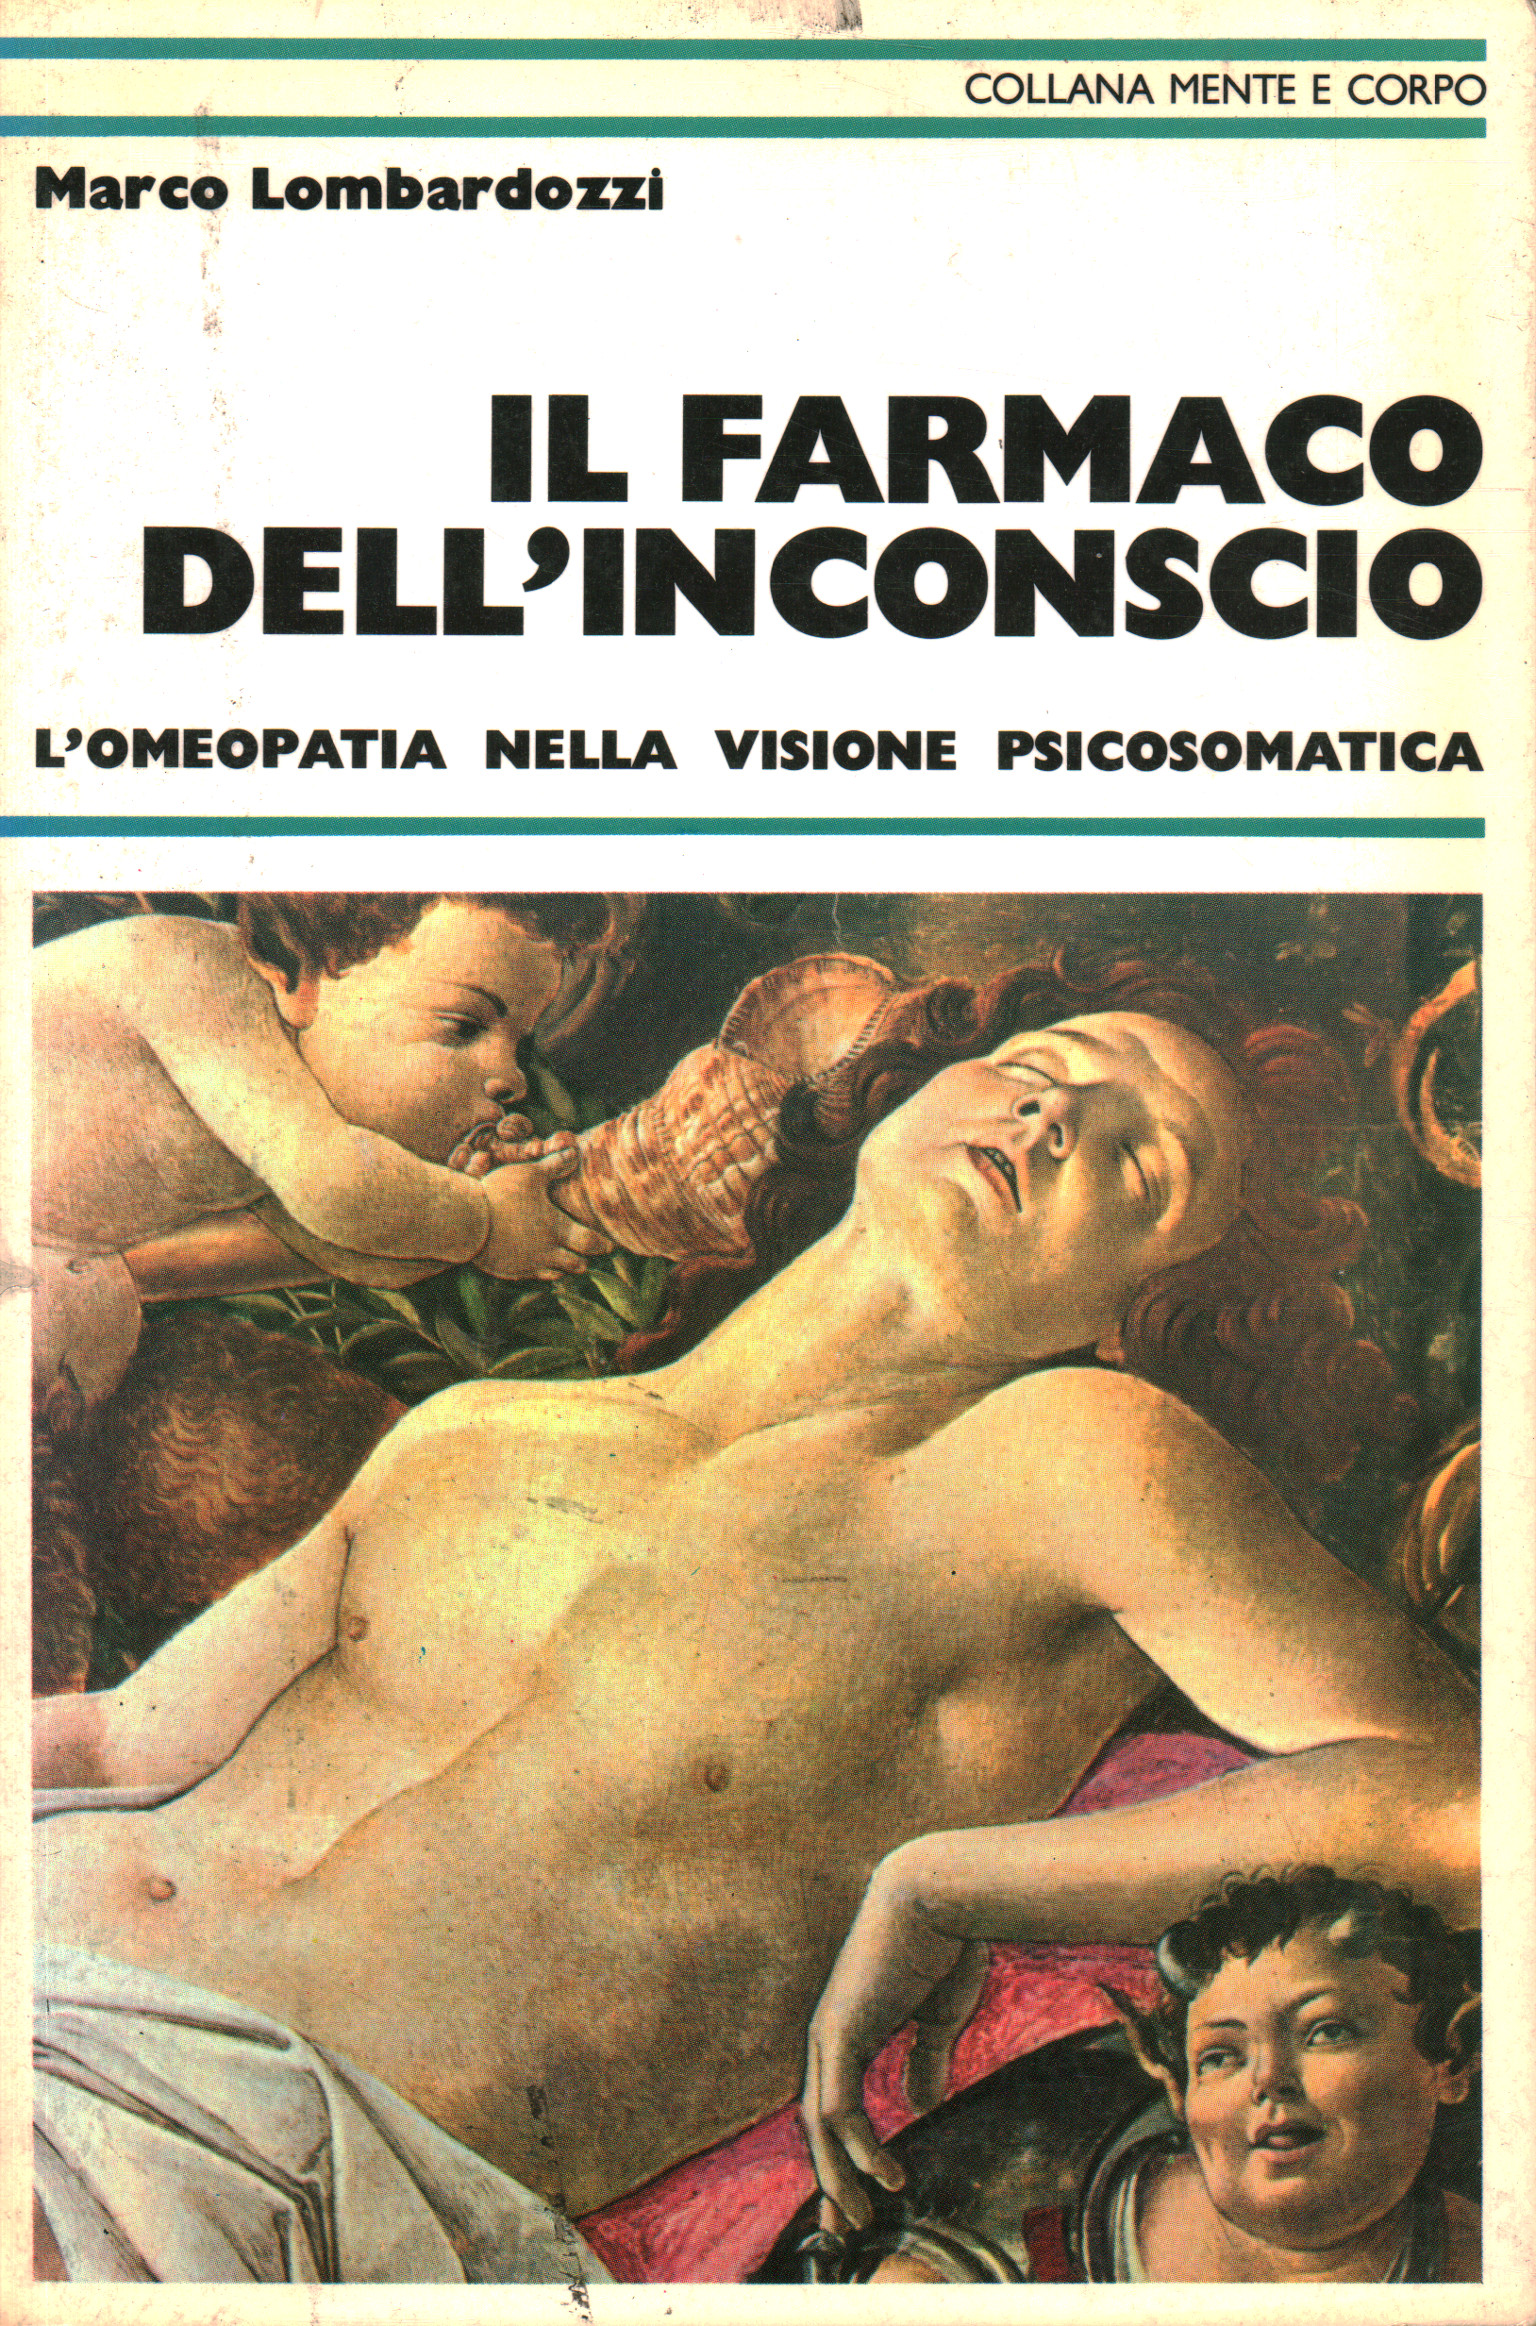 La droga del inconsciente, Marco Lombardozzi